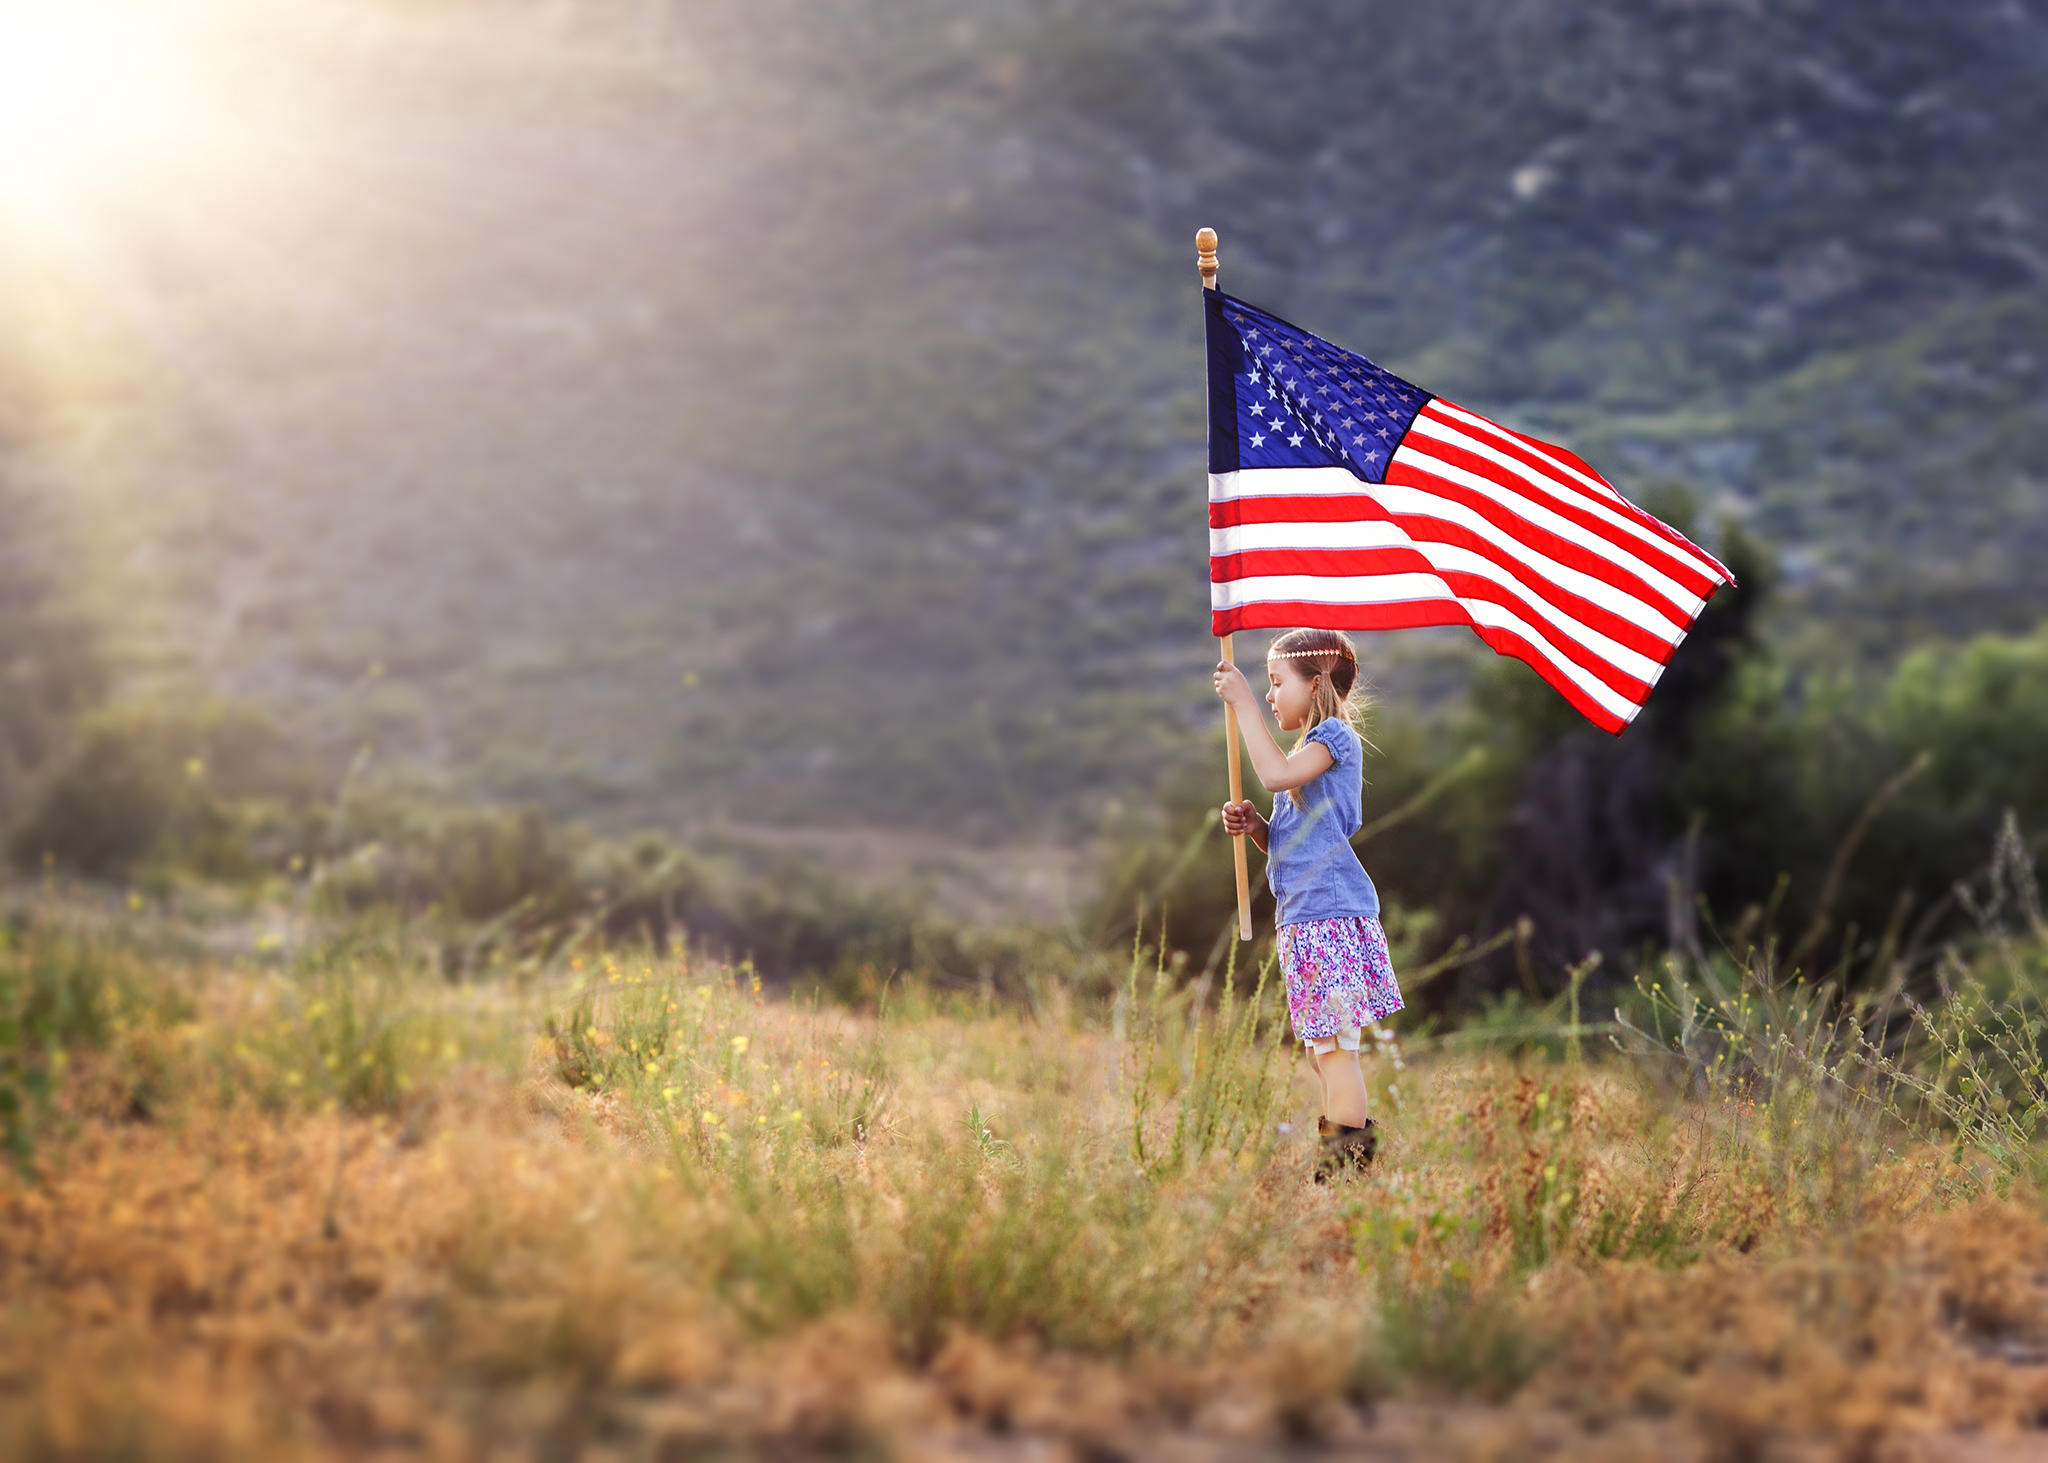 Amerika ru. Американский флаг. Американец с флагом. Девочка с американским флагом. Американский патриотизм.